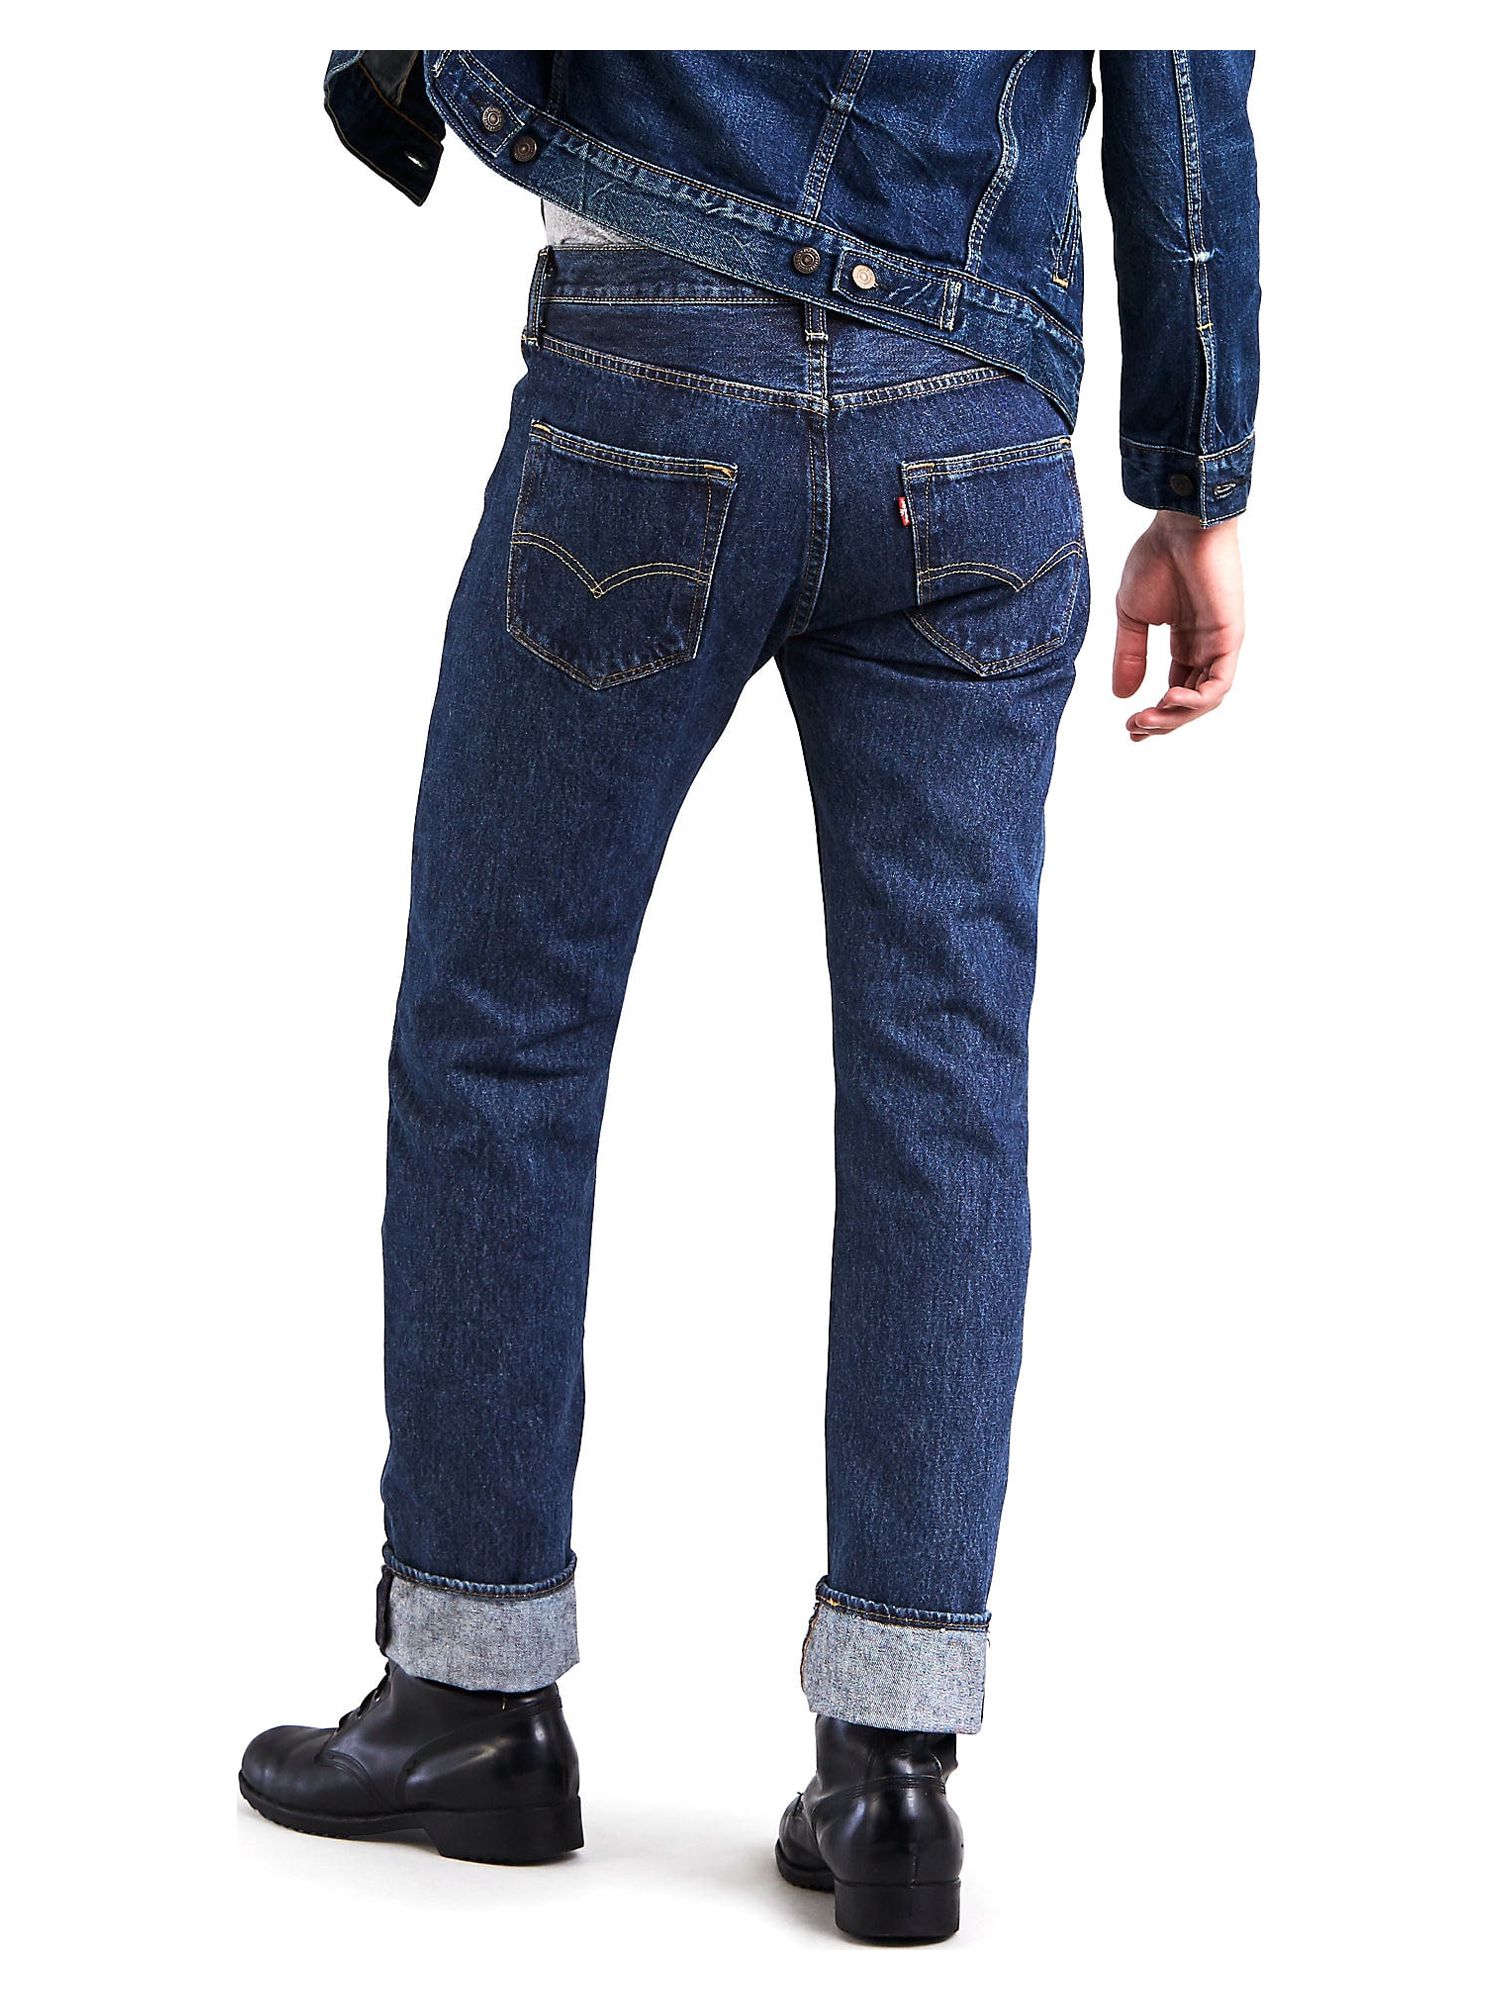 Levi's Men's 501 Original Fit Jeans - image 5 of 9